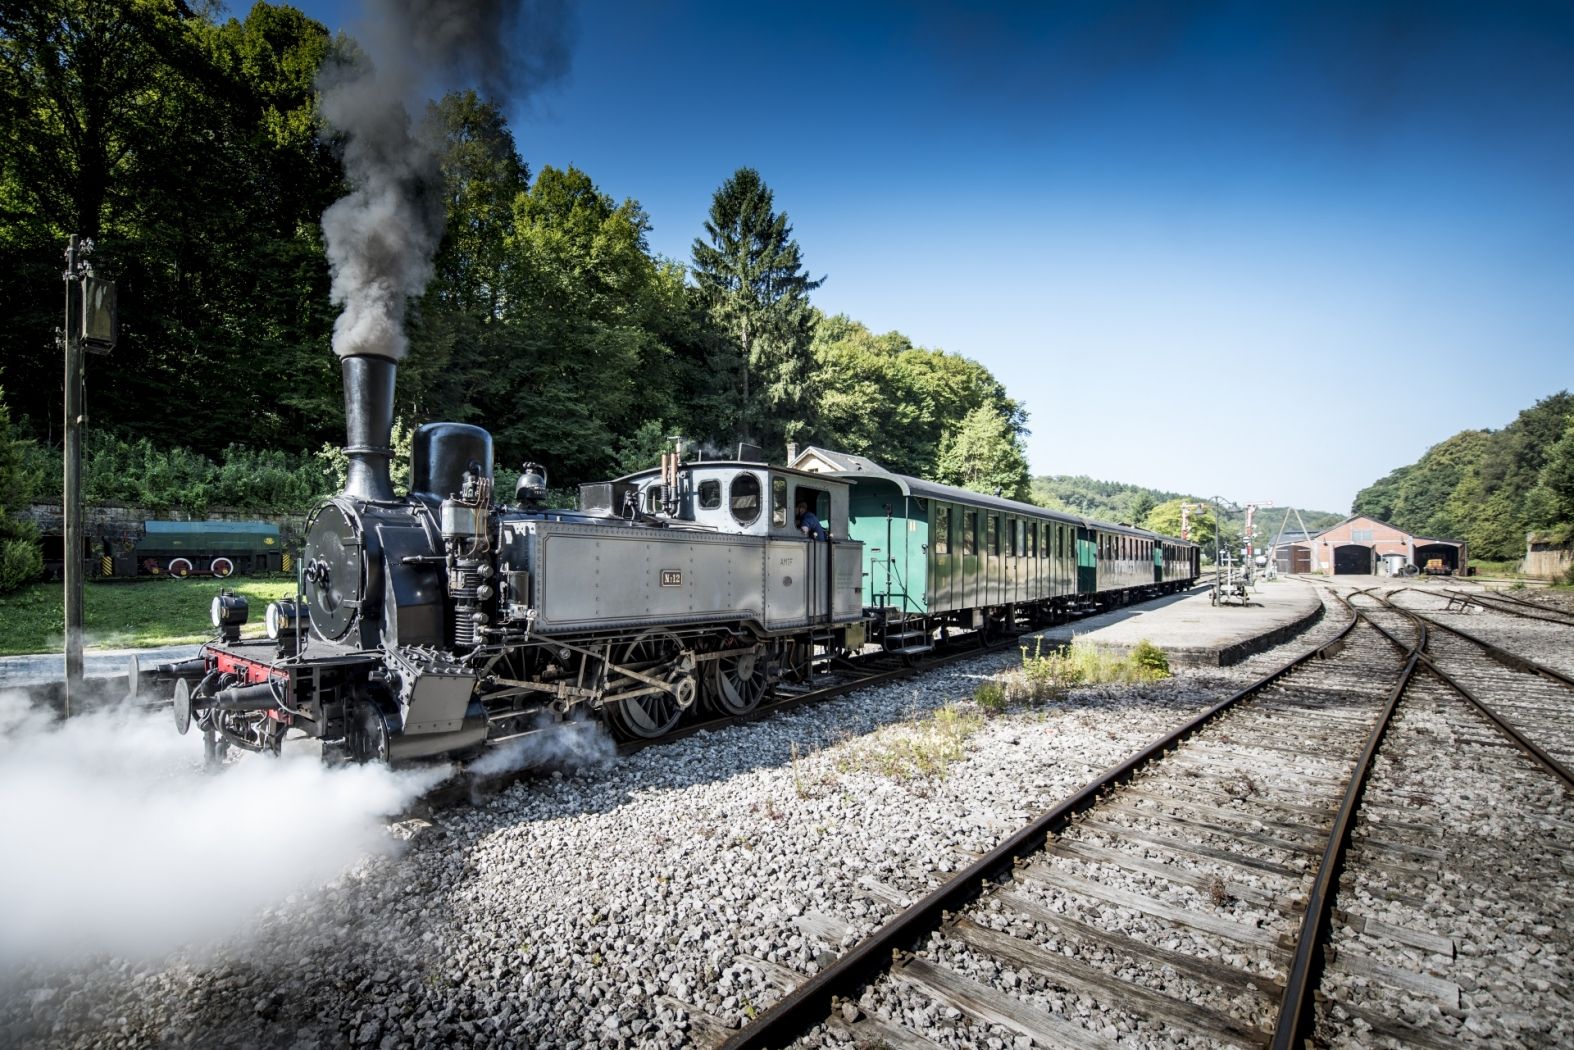 Historical steam train "Train 1900"